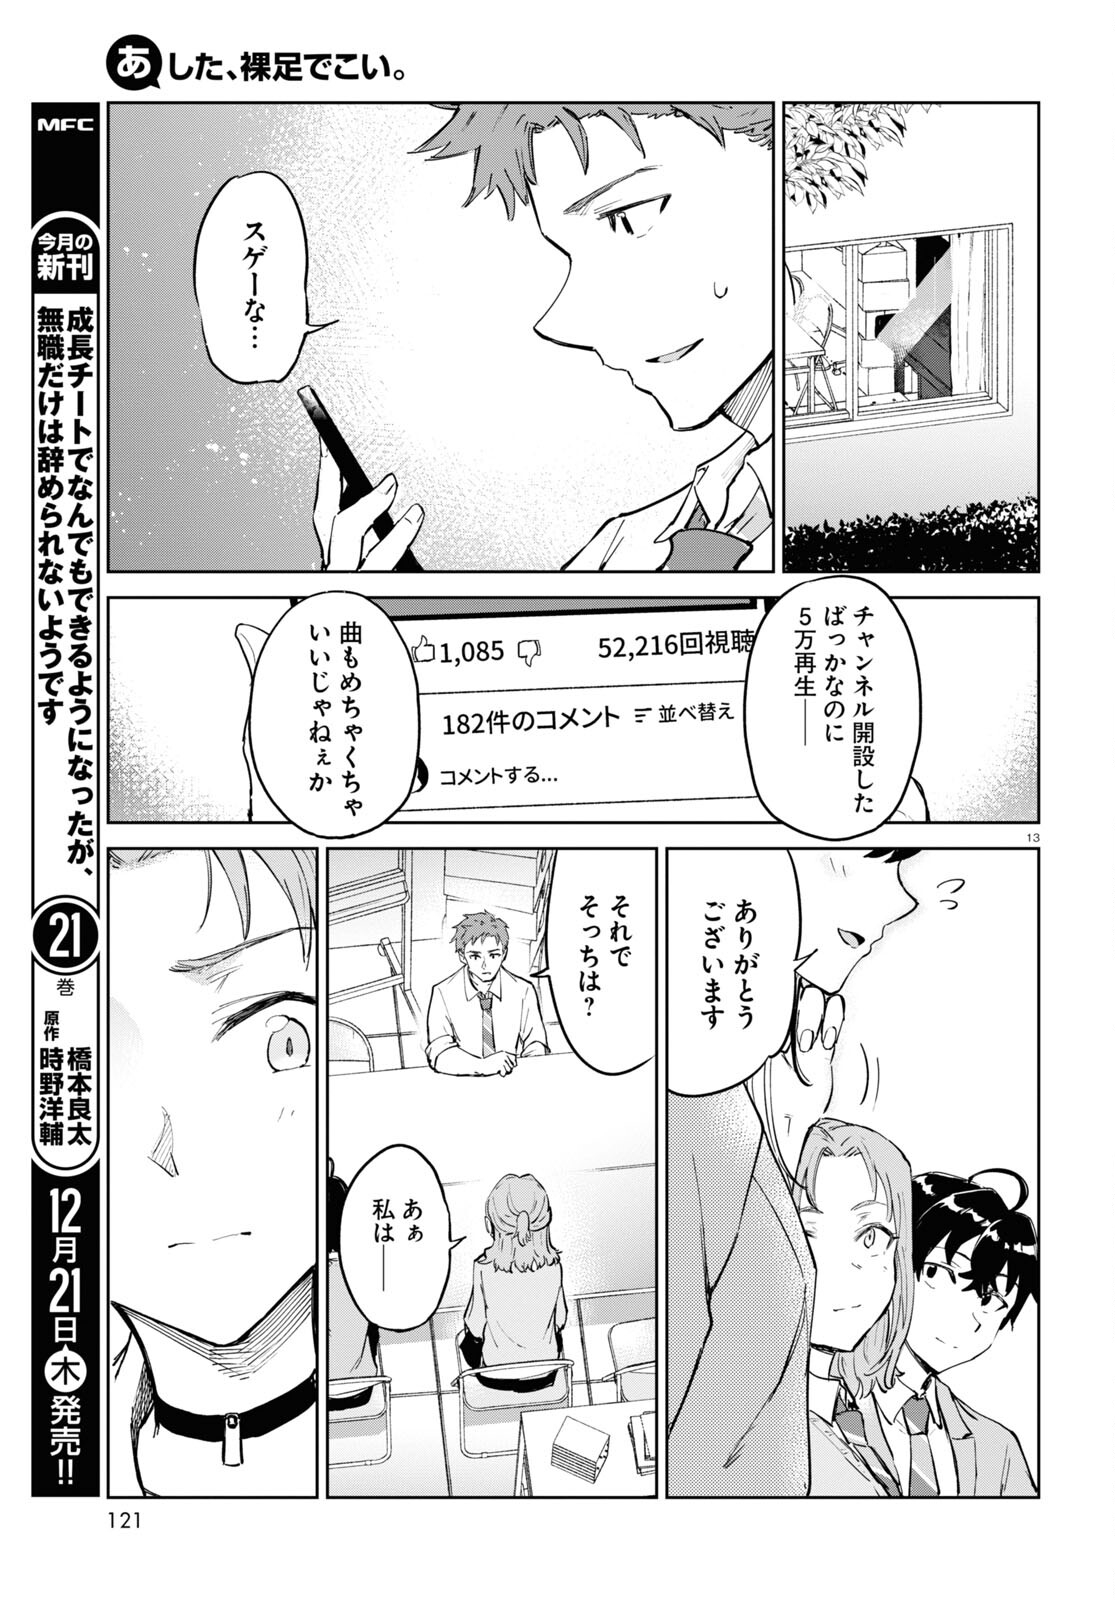 Ashita, Hadashi de Koi. - Chapter 5 - Page 13